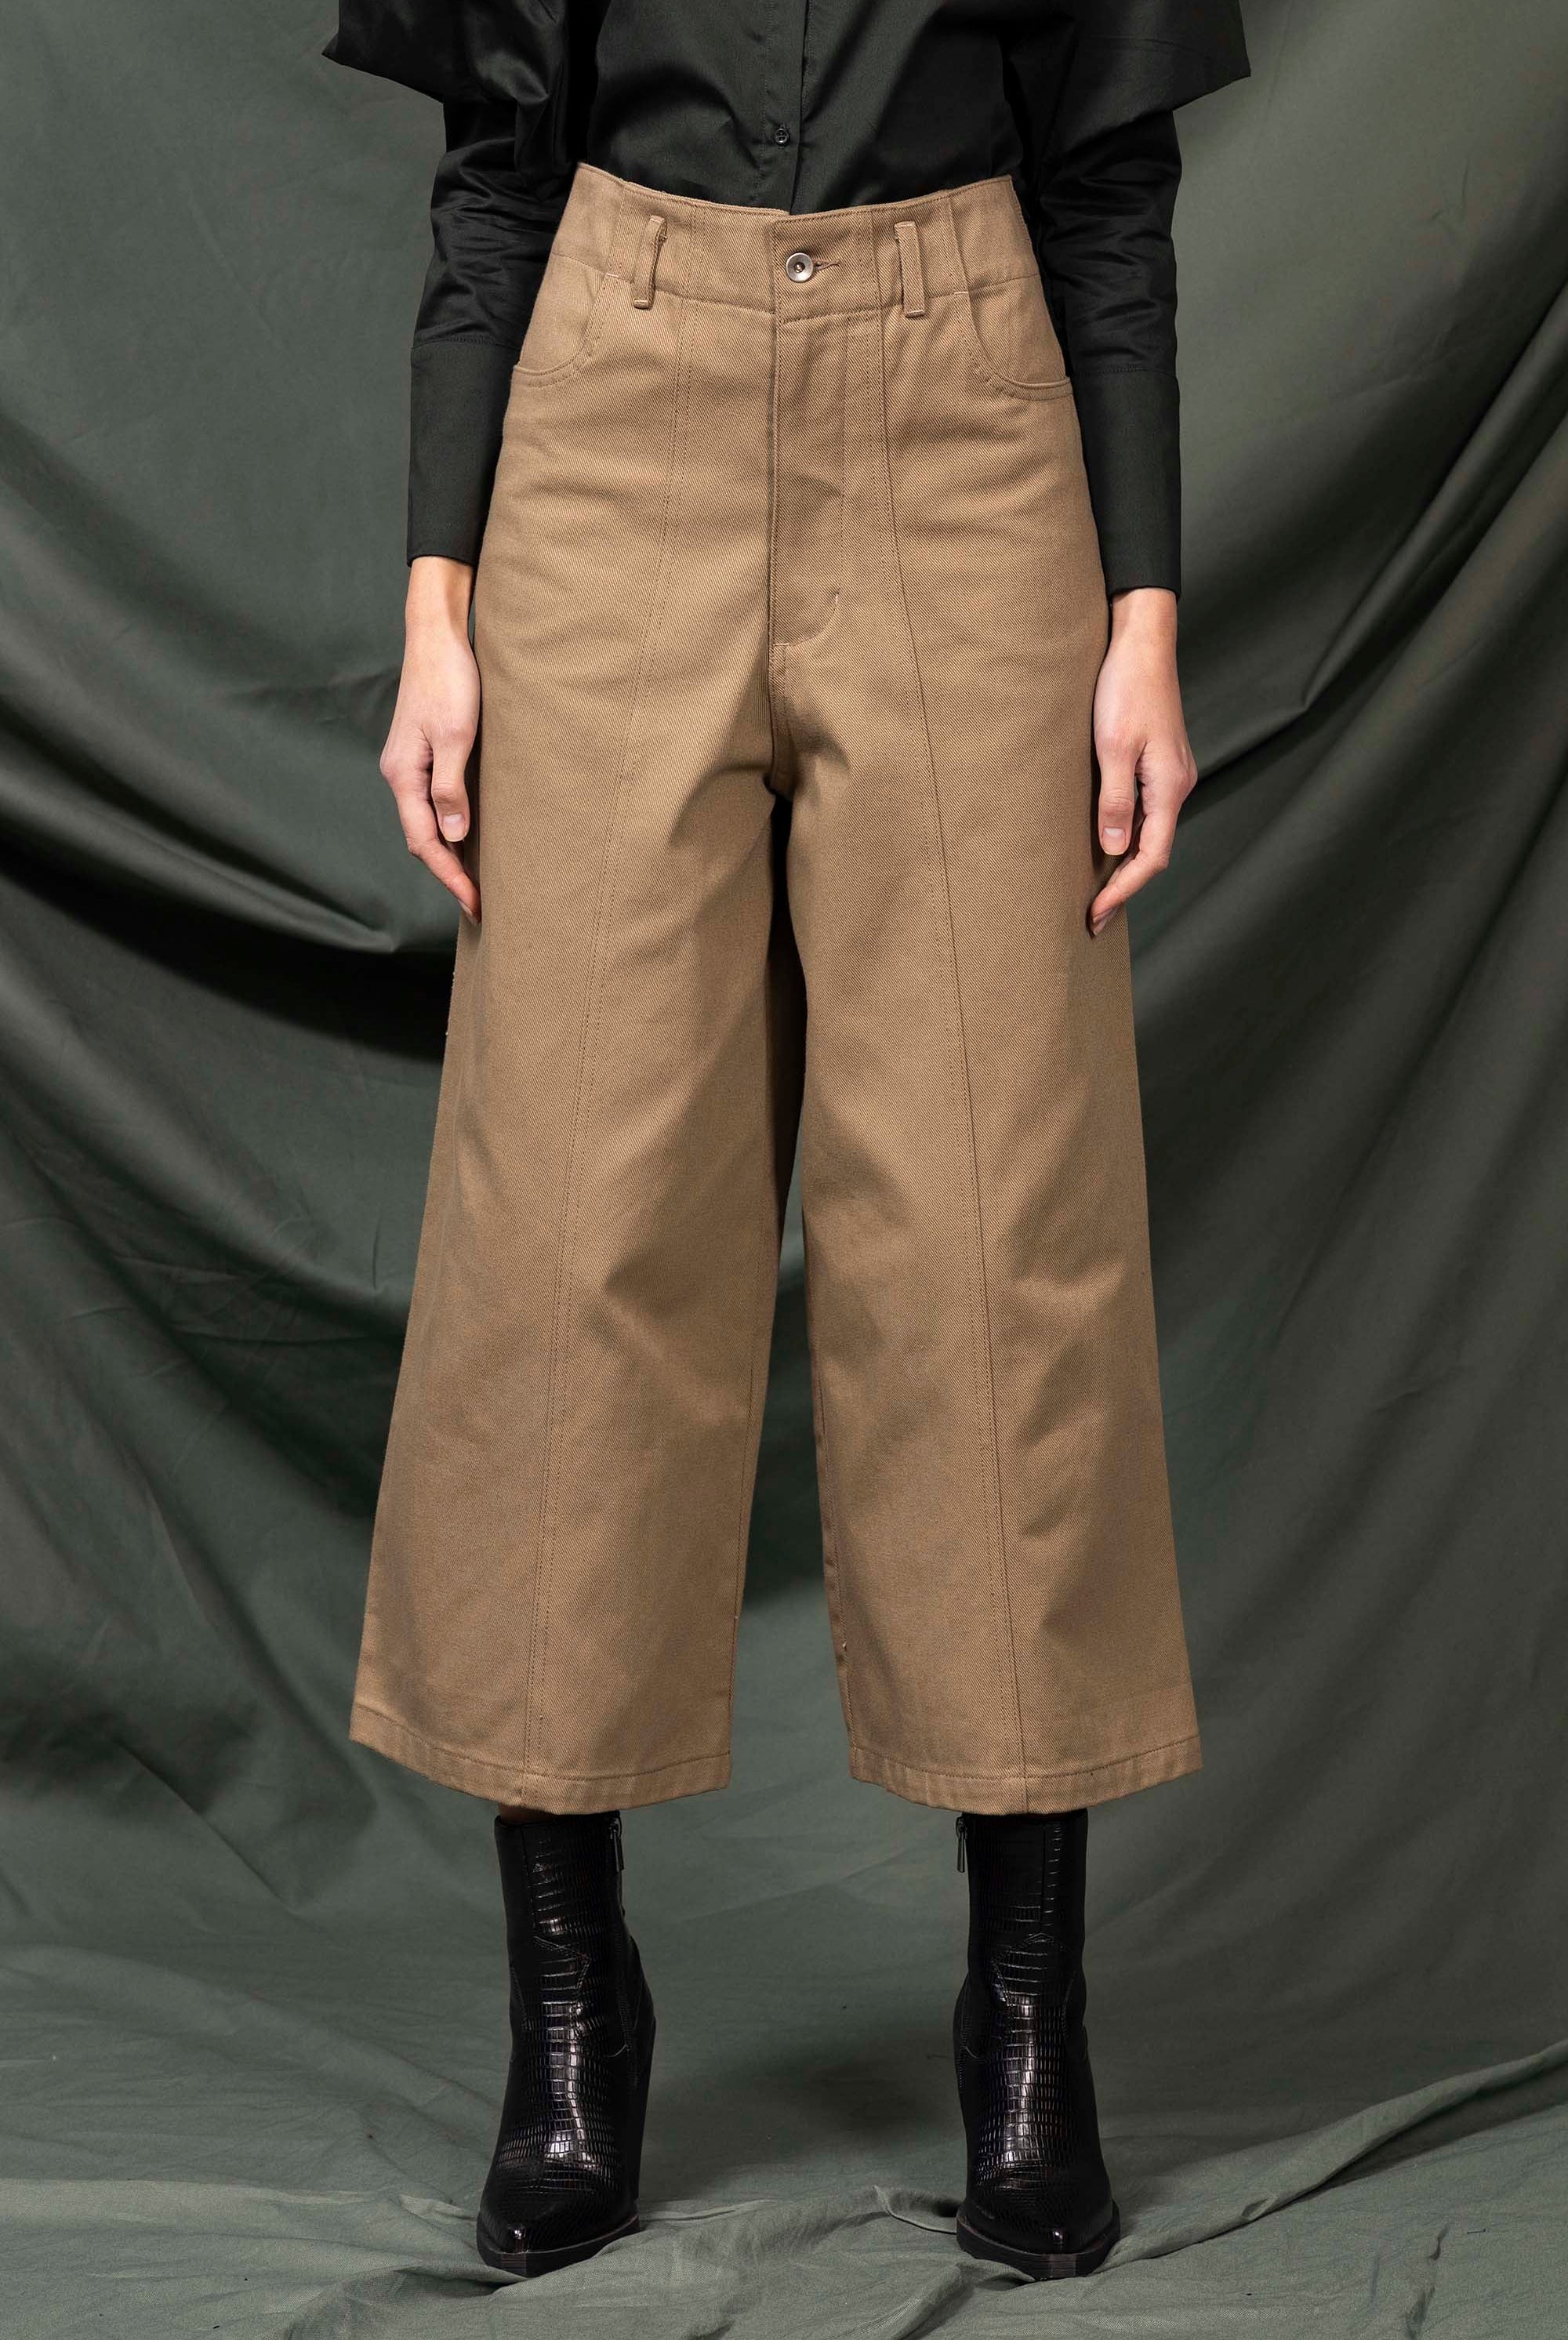 Pantalon Margarita Marron Clair minimalisme et détails tendance, coupes classiques et une palette de couleurs neutres